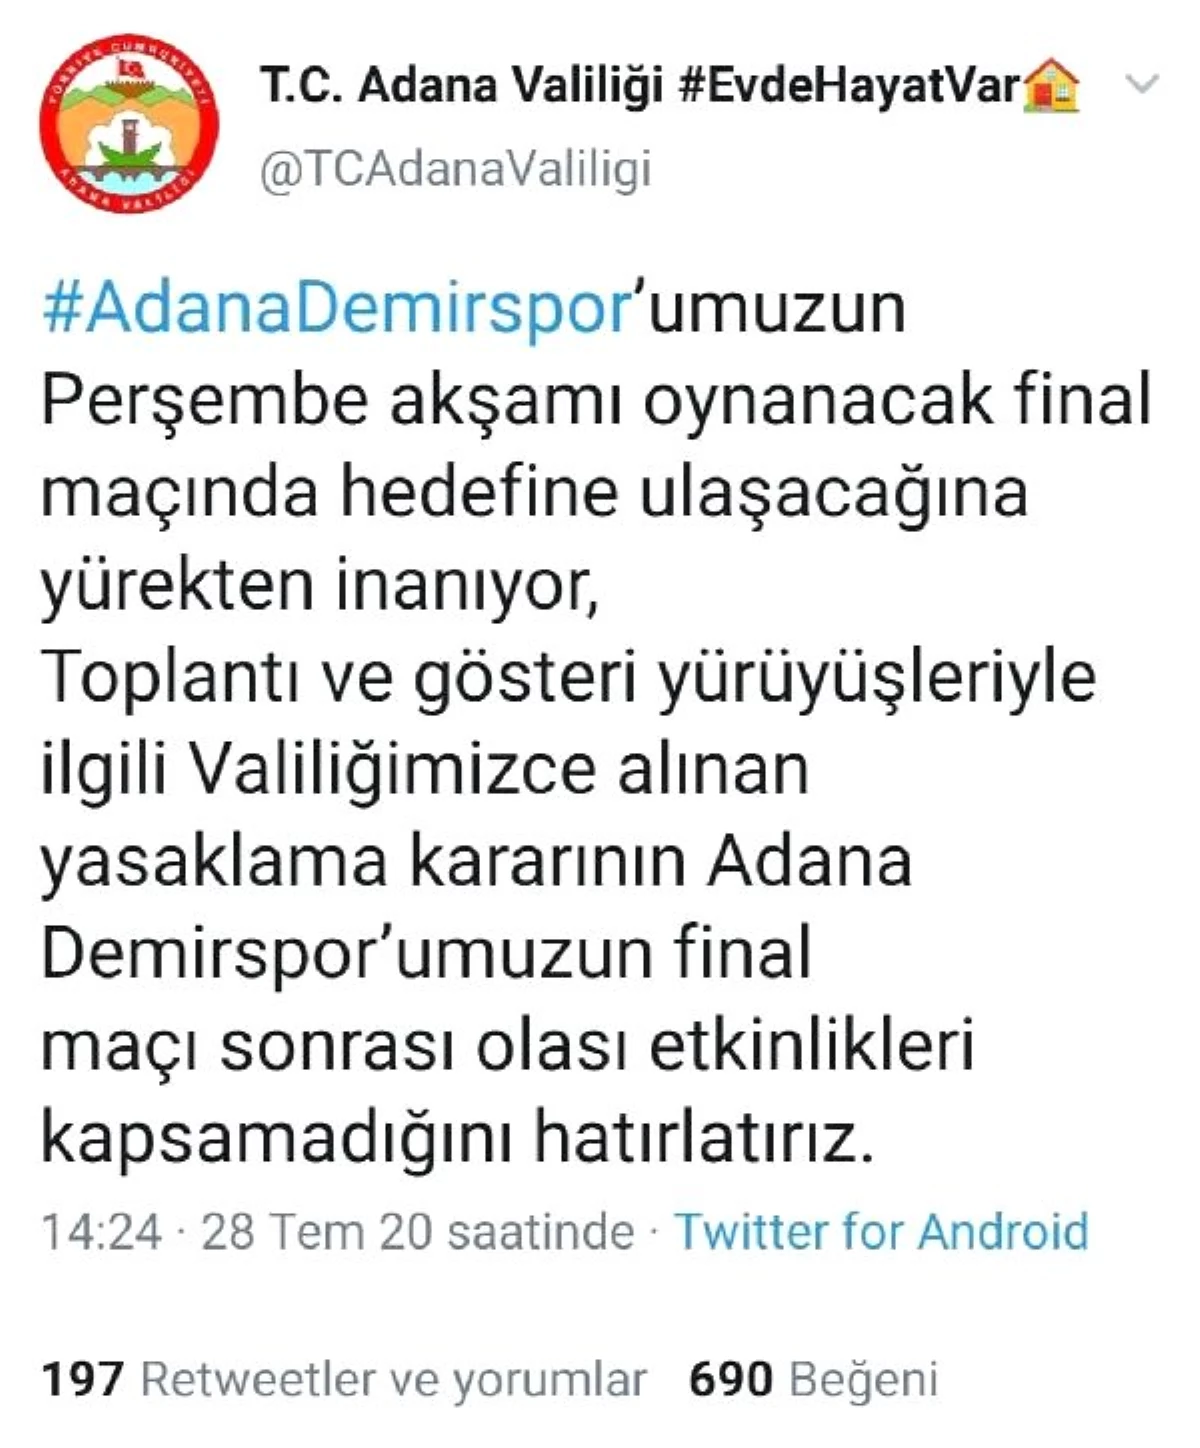 Adana\'da eylemler 3 gün yasaklandı, Adana Demirspor etkinlikleri muaf tutuldu